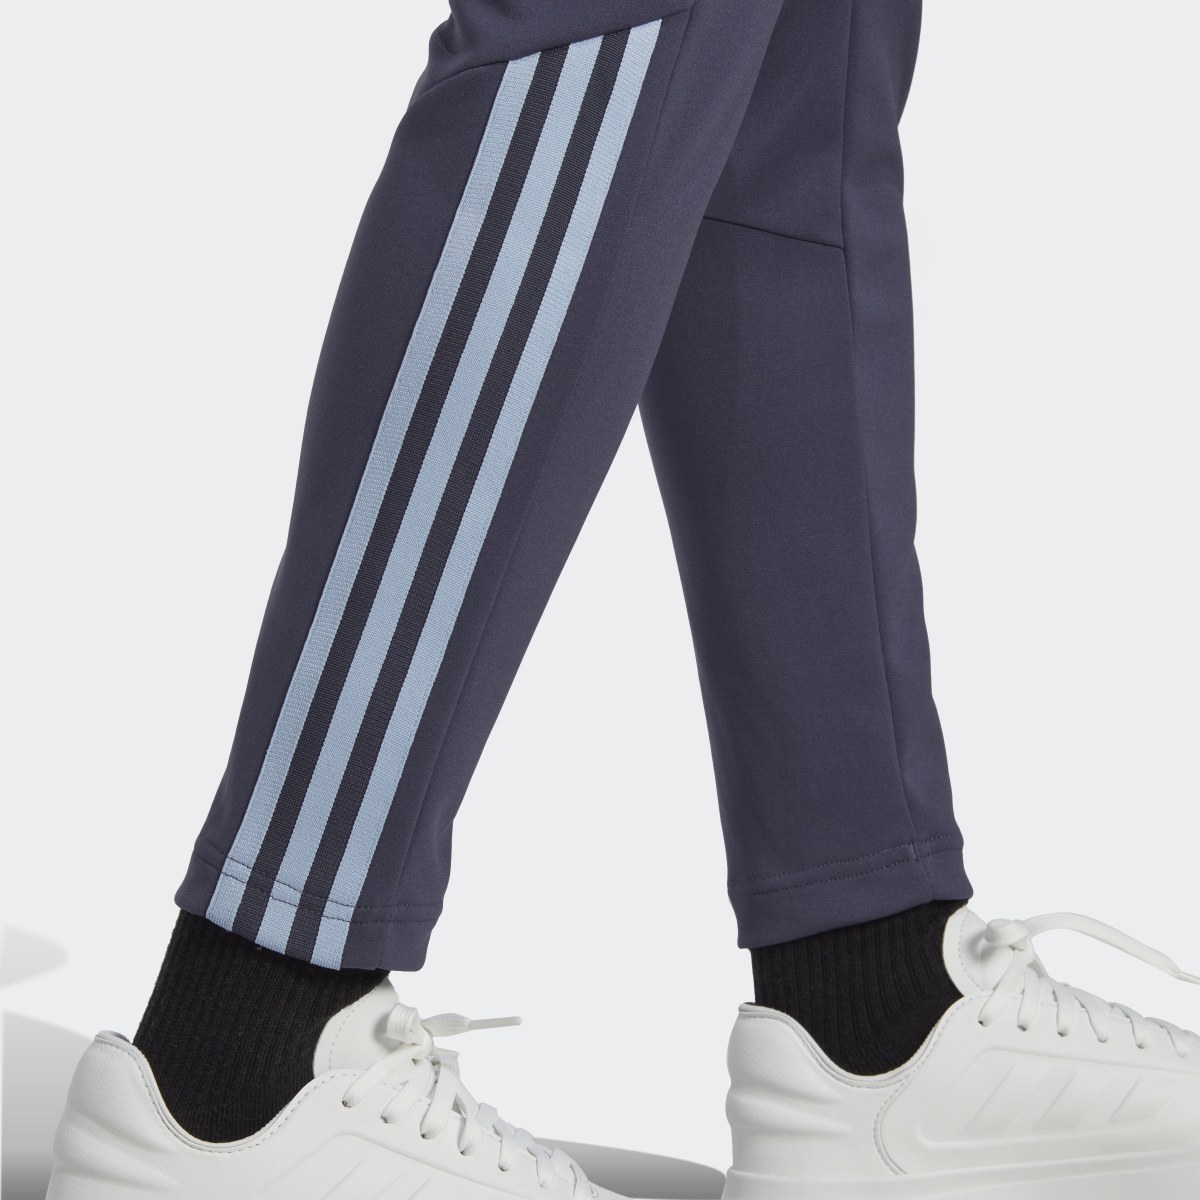 Adidas Tiro Slim Pants. 6